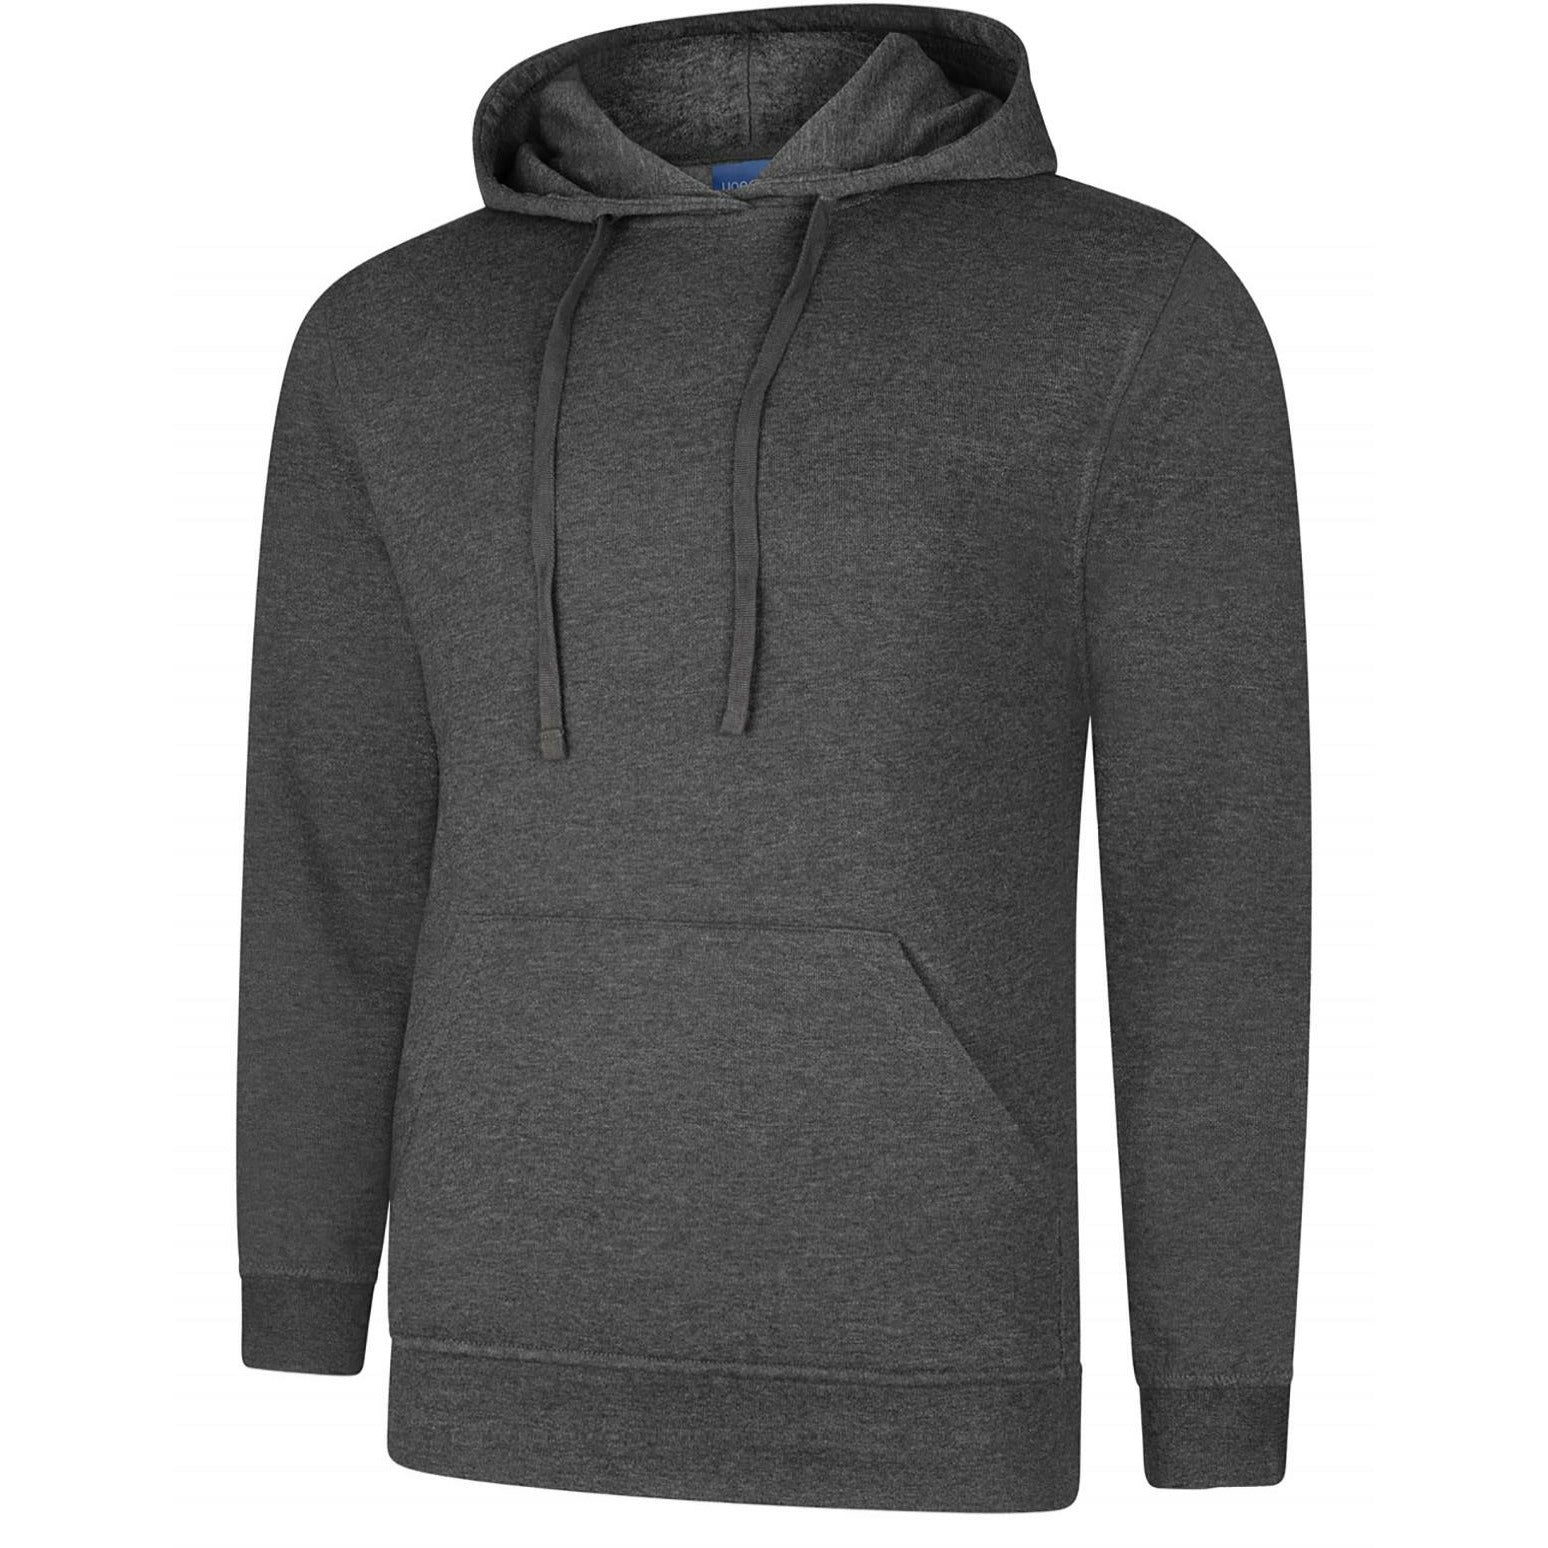 Deluxe Hooded Sweatshirt (XS - M) Charcoal